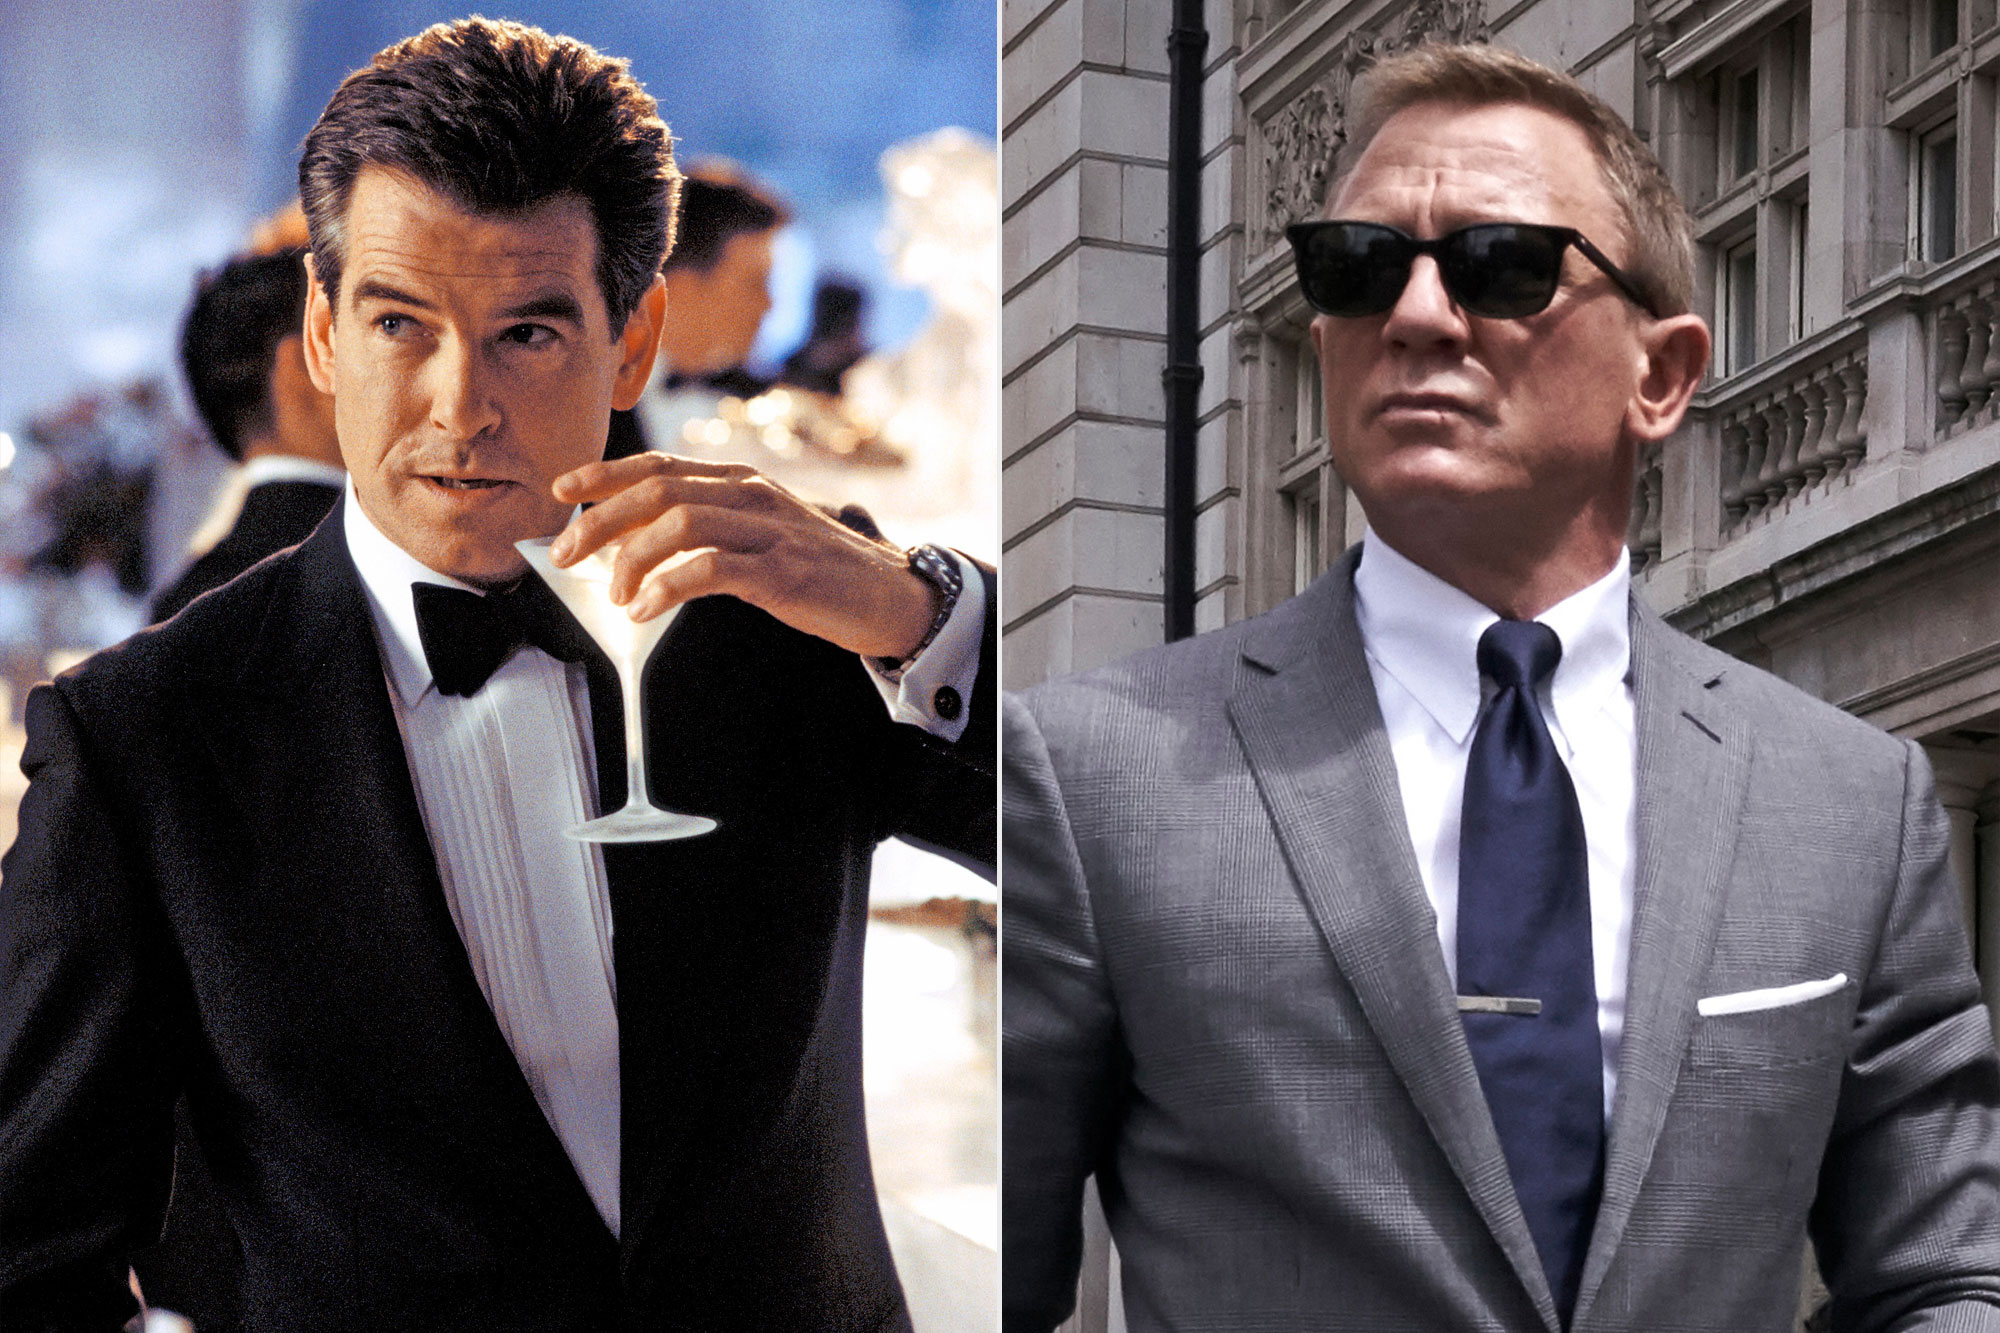 Pierce Brosnan ไม่แคร์ว่าใครจะเป็น 007 คนต่อไป และดูฉบับ Daniel Craig แค่บางภาค 